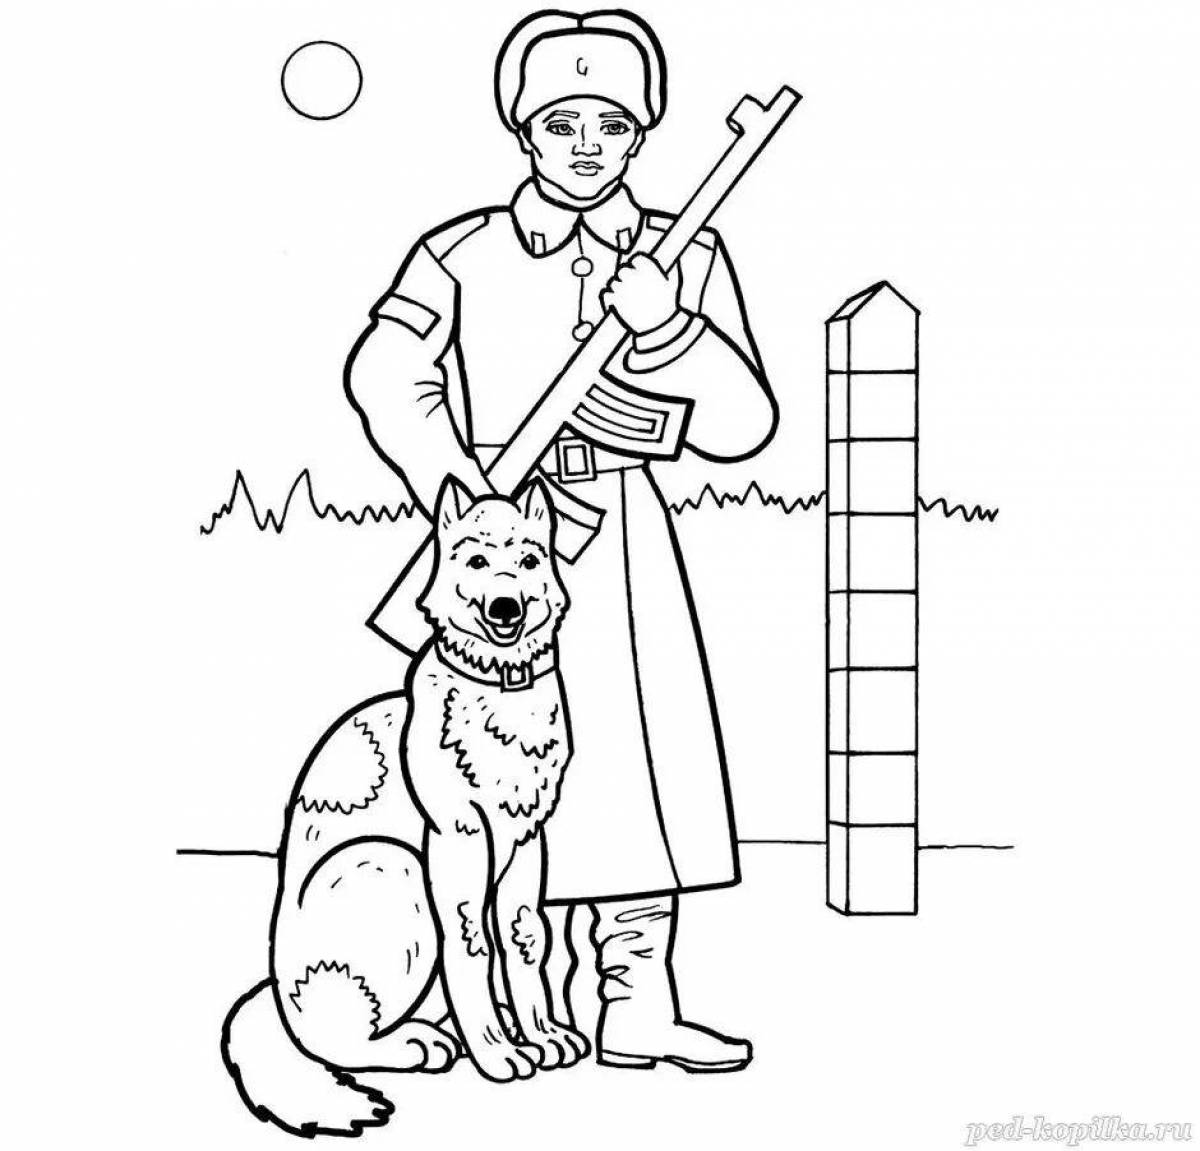 Пограничник с собакой для детей #28